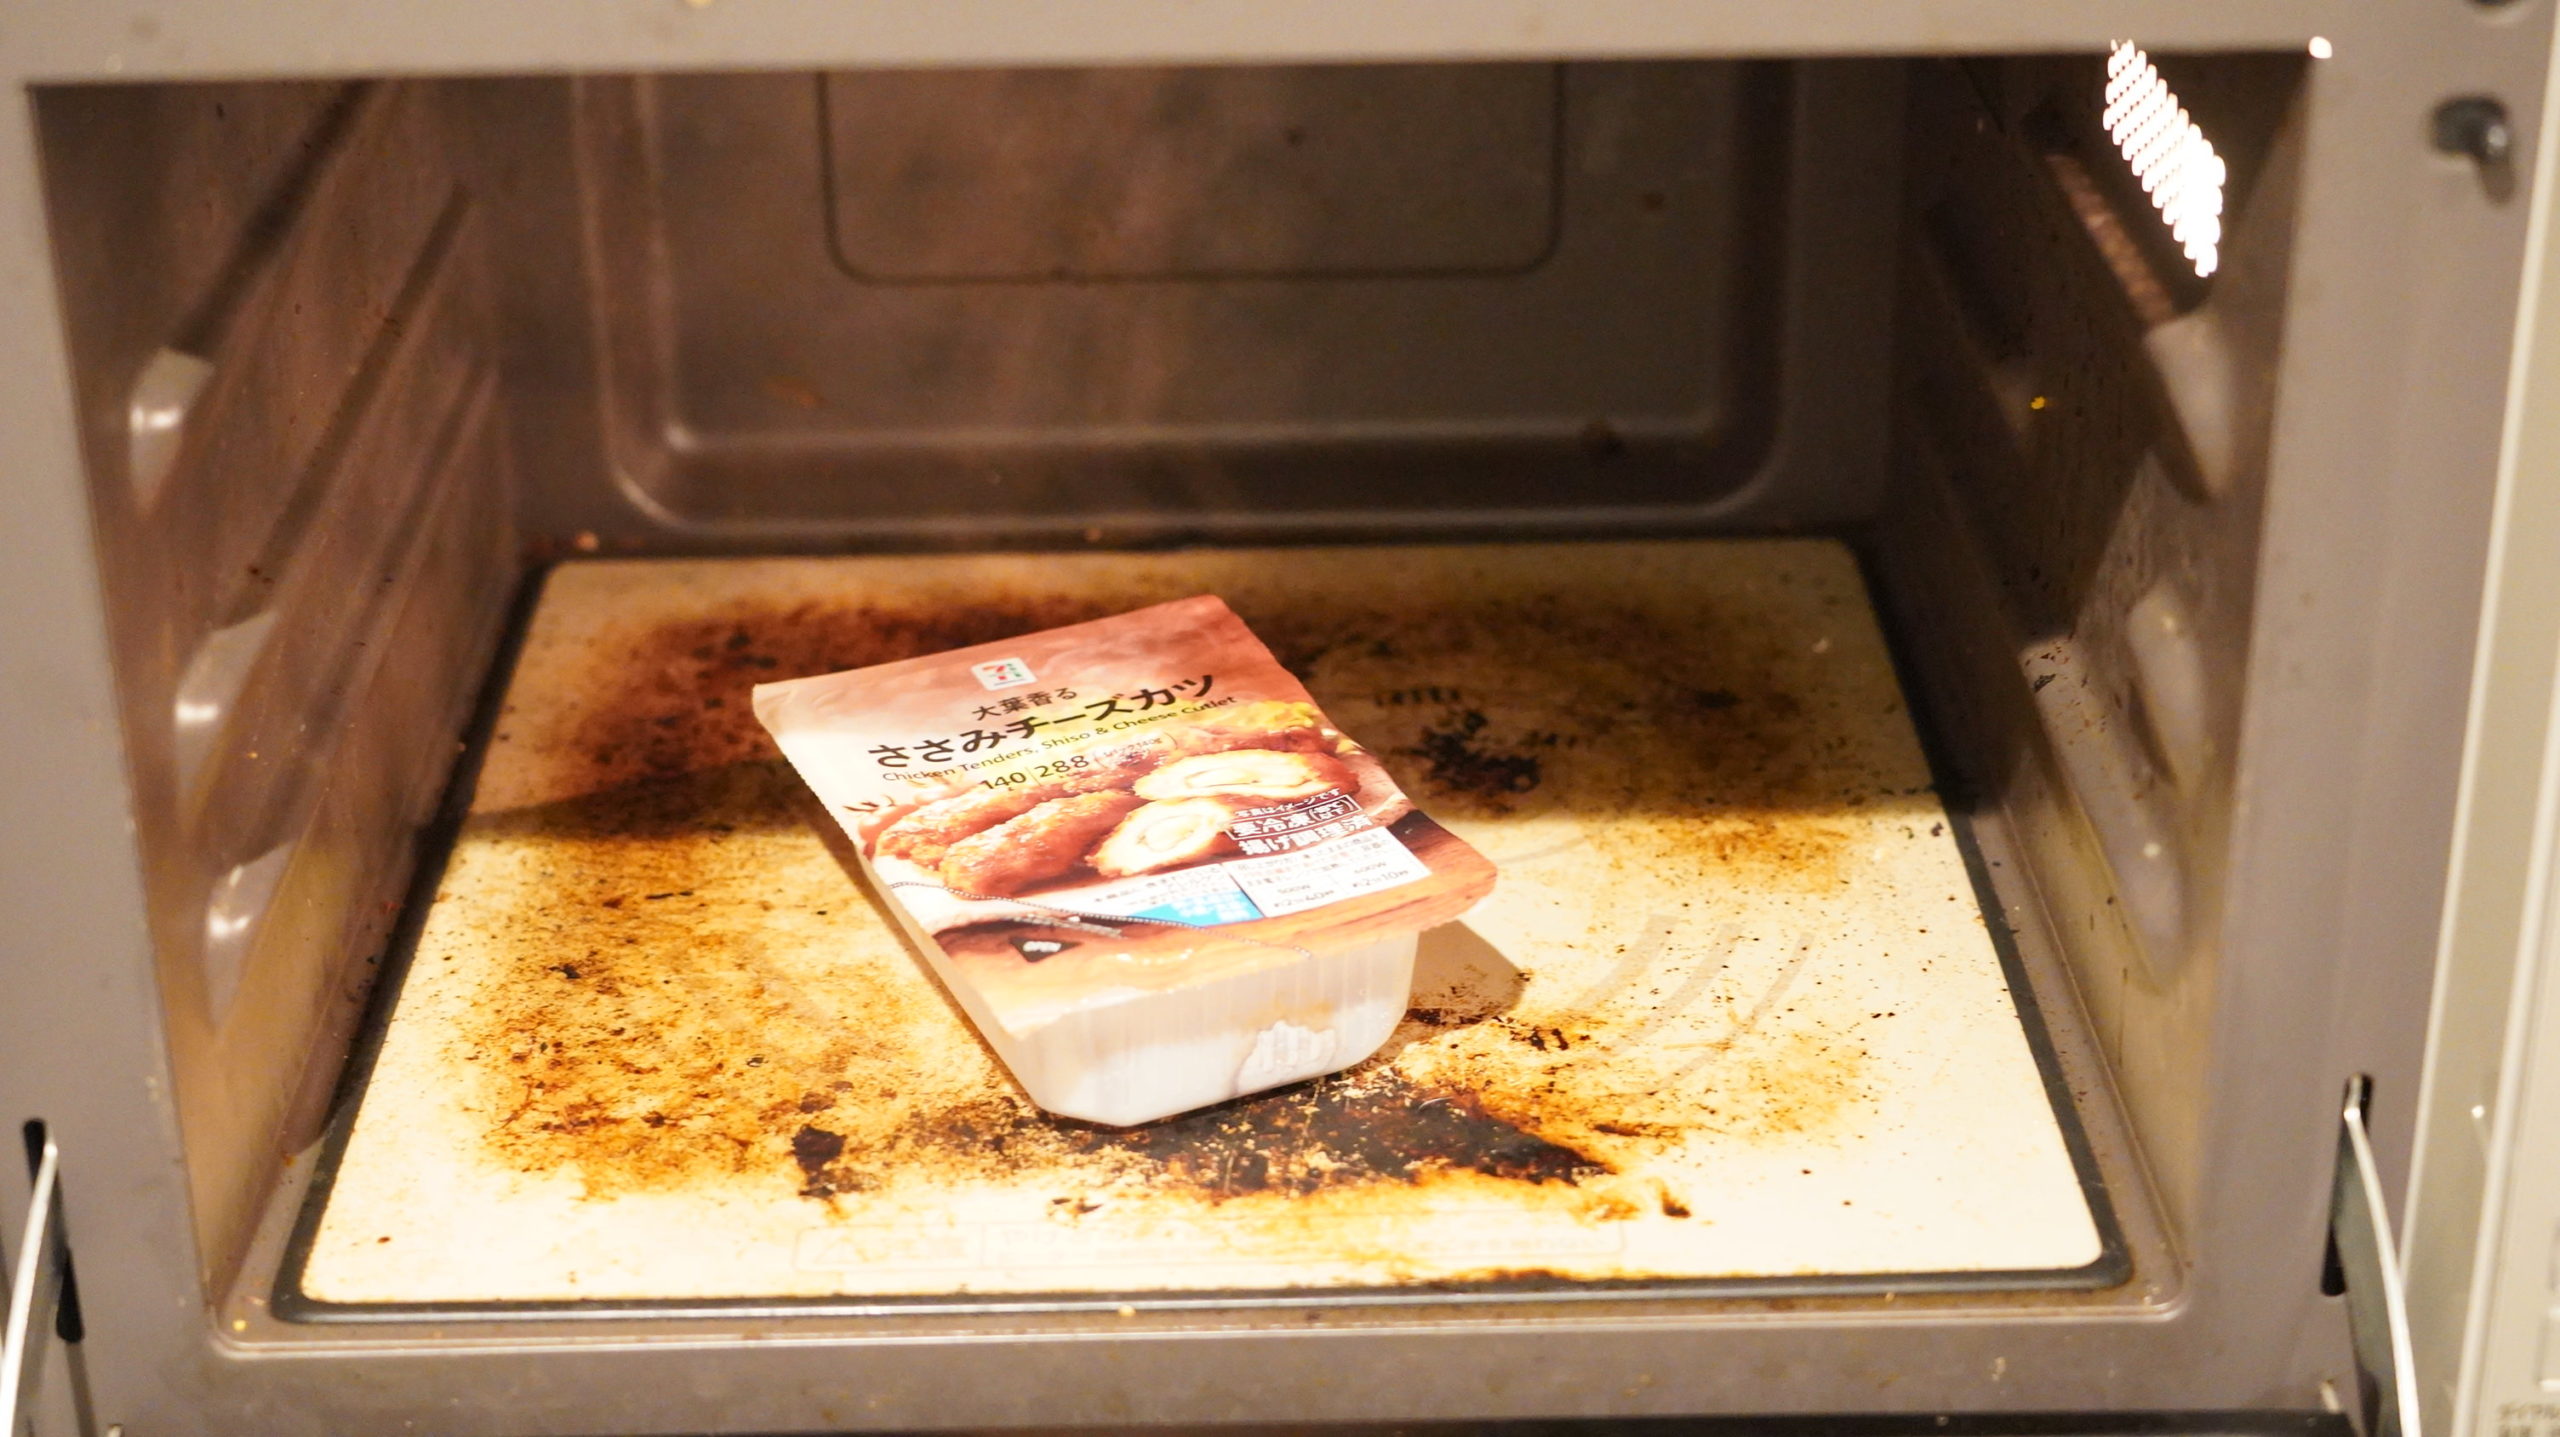 セブンイレブンの冷凍食品「大葉香る・ささみチーズカツ」を電子レンジで加熱している写真